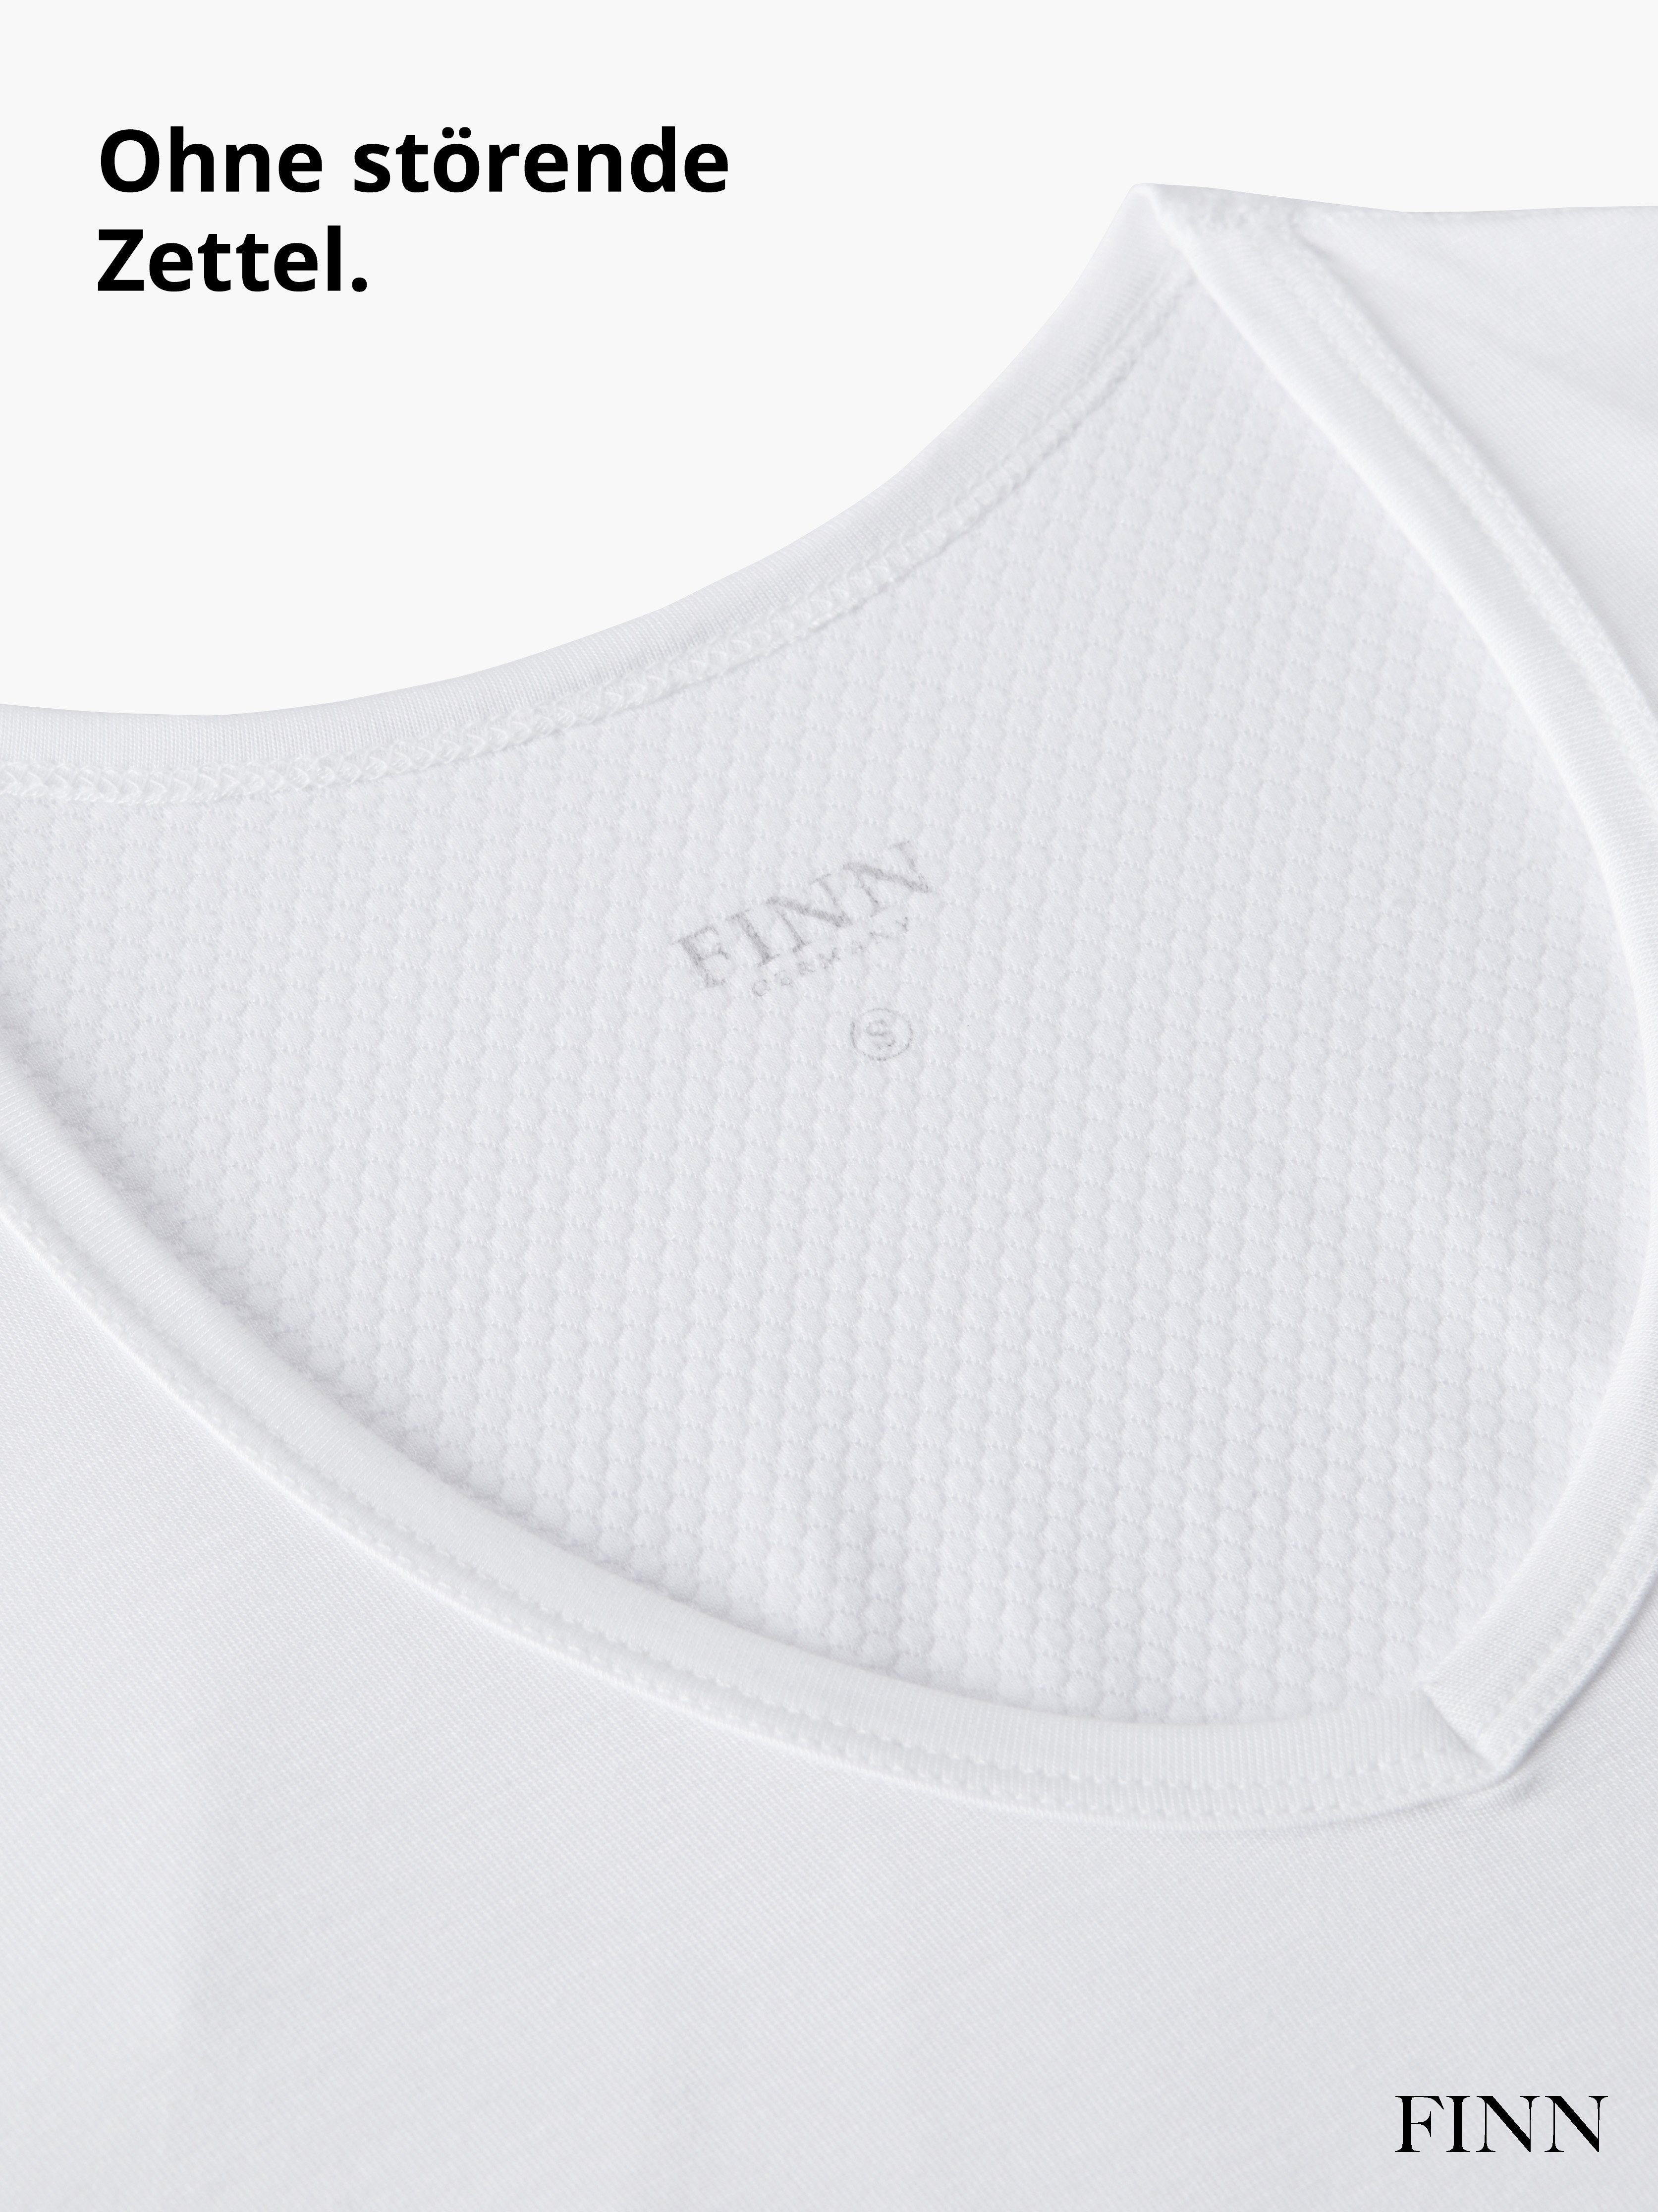 vor Rücken garantierte am Unterhemd FINN Schutz zusätzlicher Wirkung 100% Einlage mit Anti-Schweiß Design Schweißflecken, Unterhemd Herren